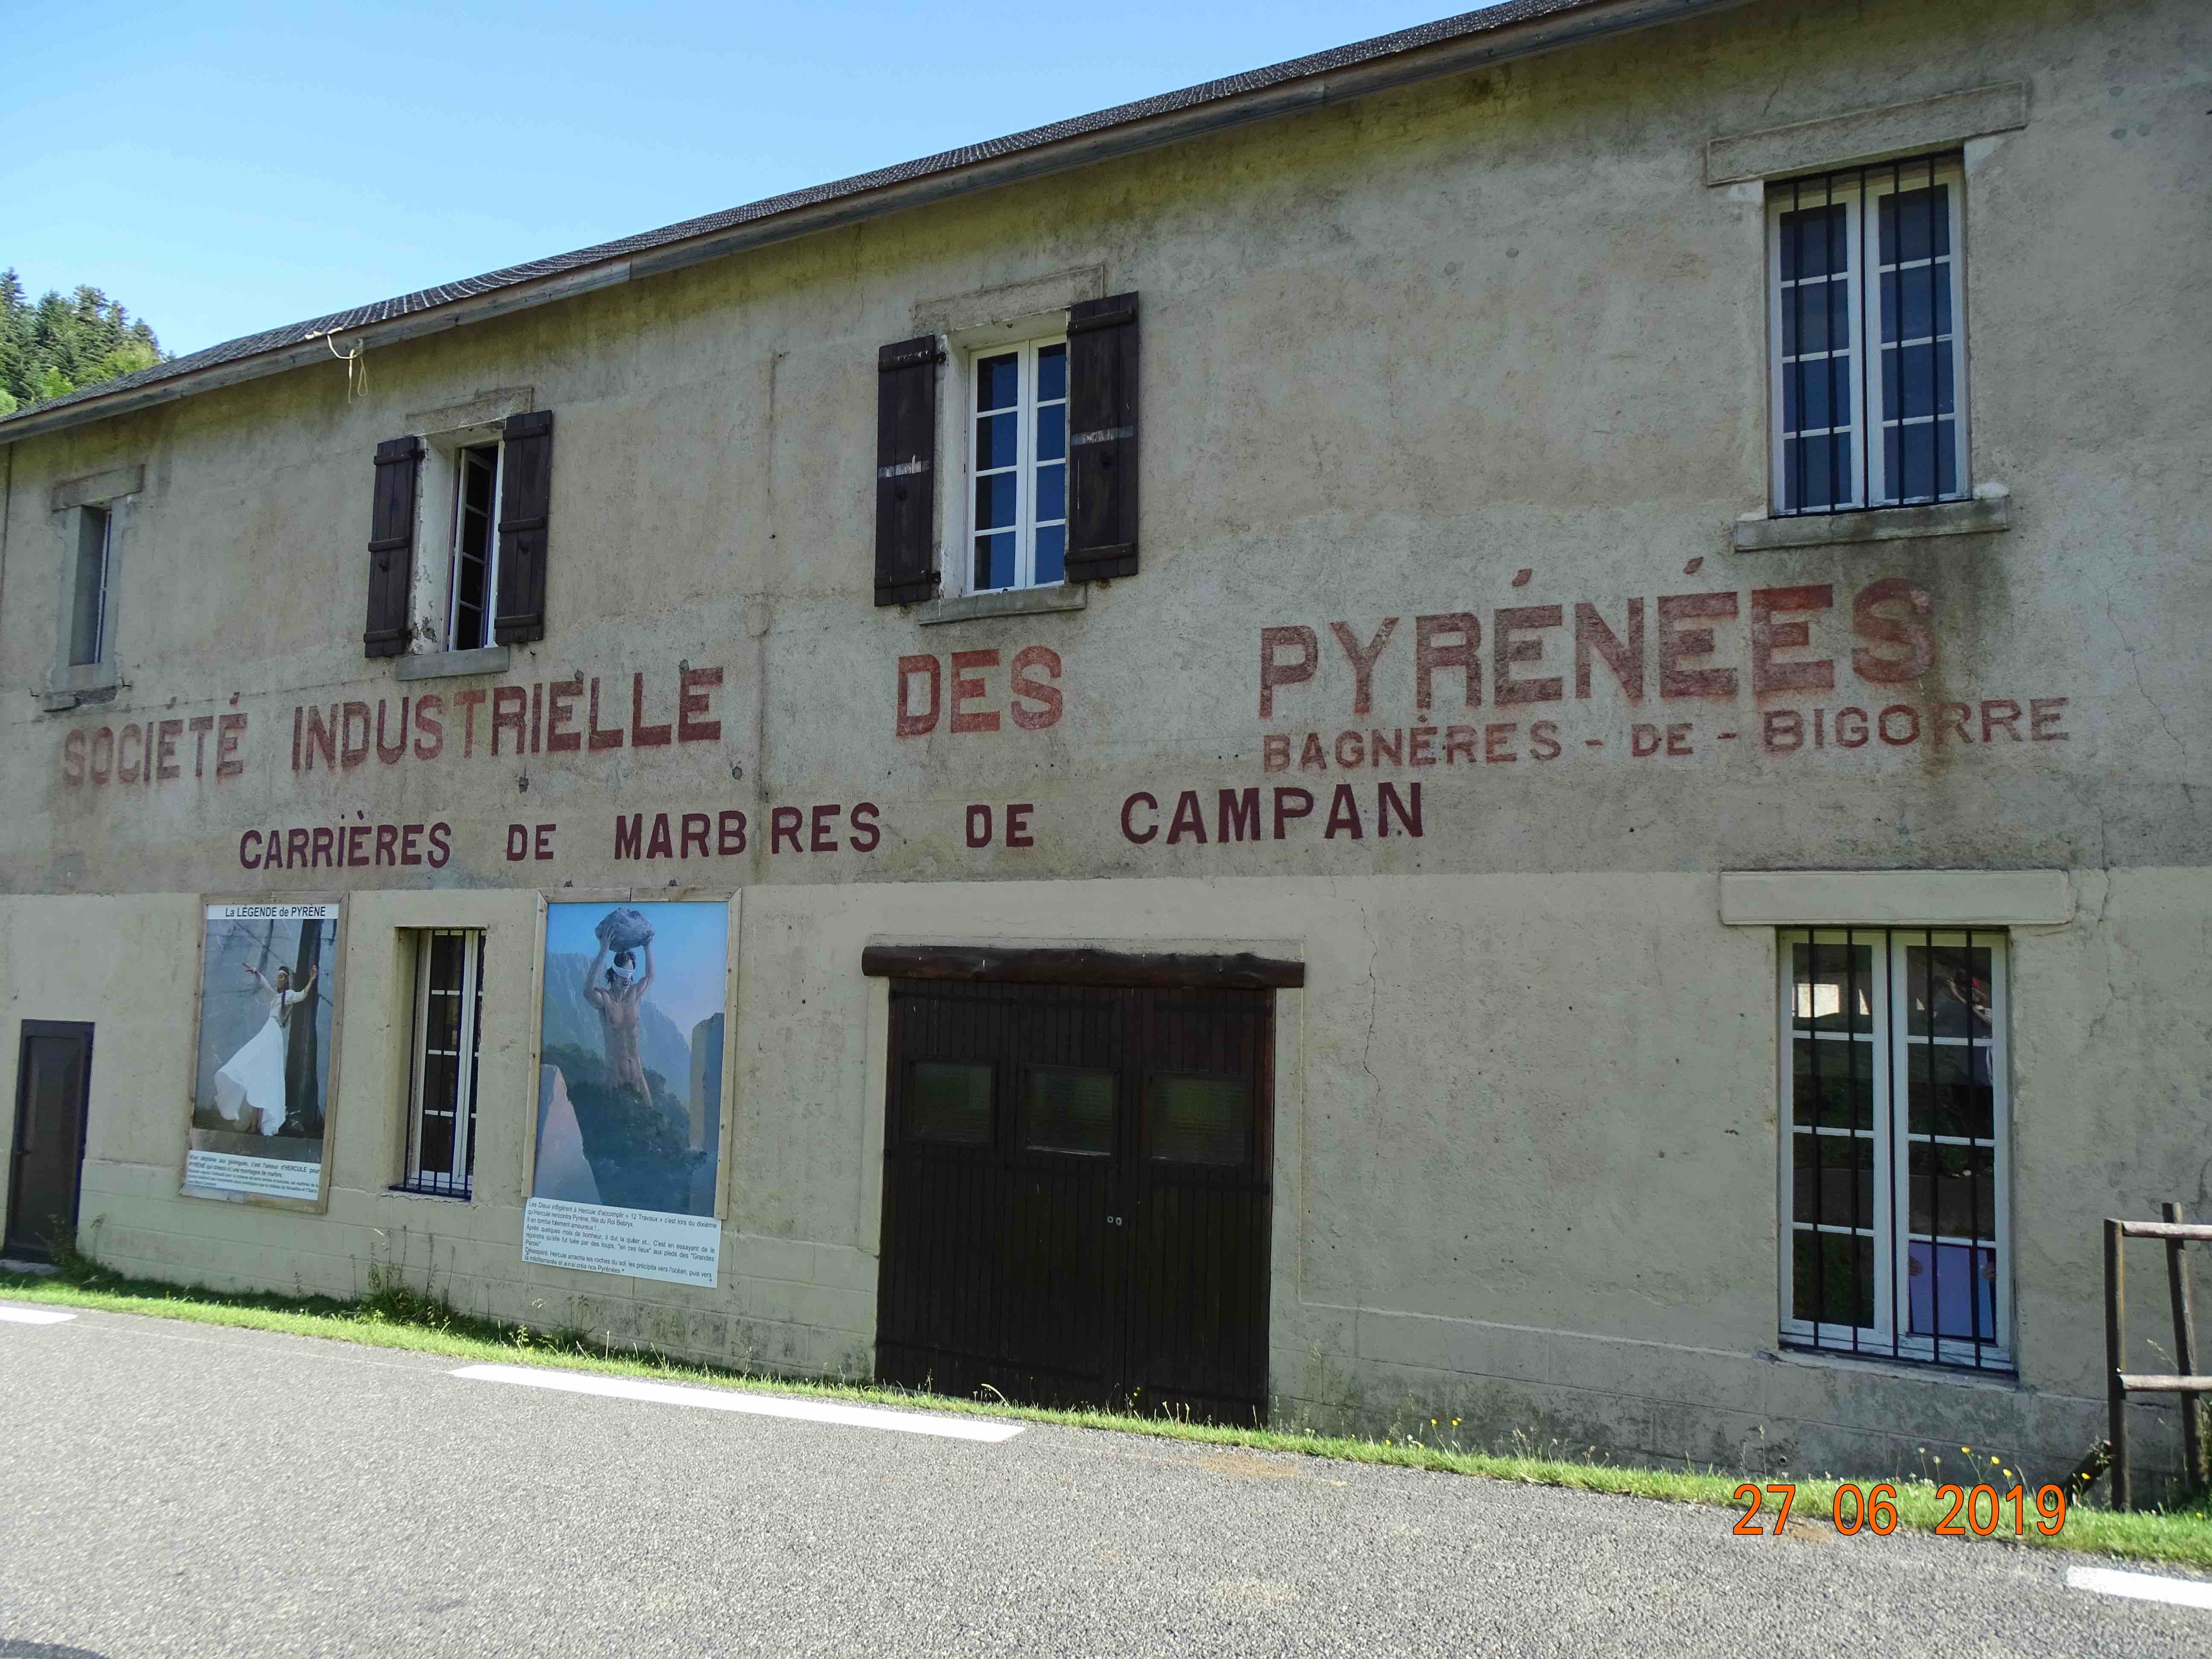 Pyrénées23